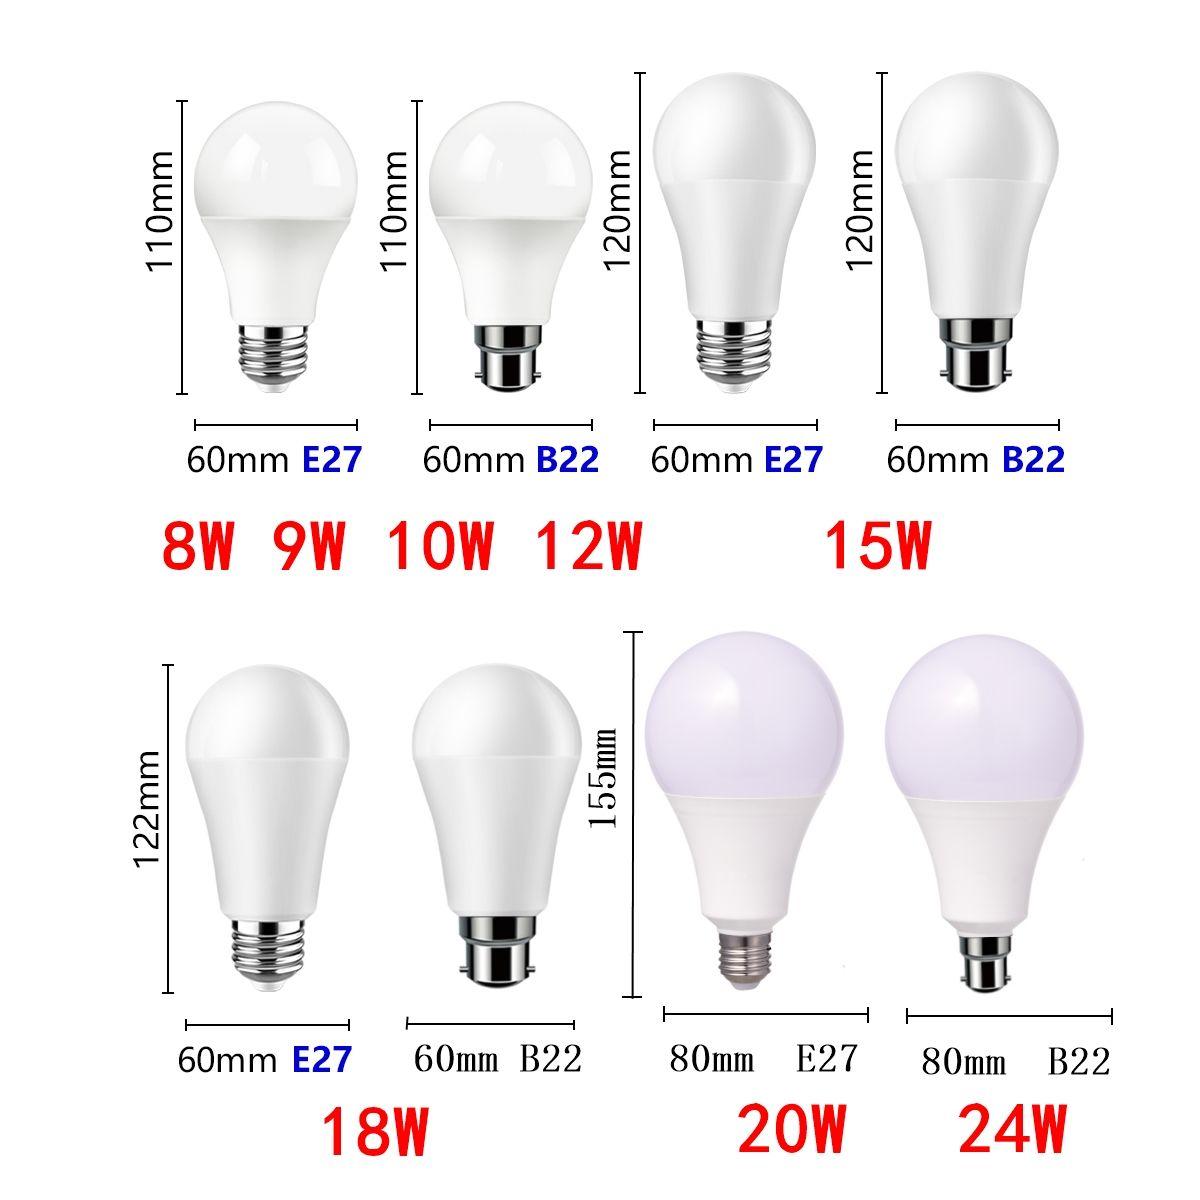 Ampoule LED ronde fantaisie B22 4 W à intensité variable 2700 K ou 3000 K